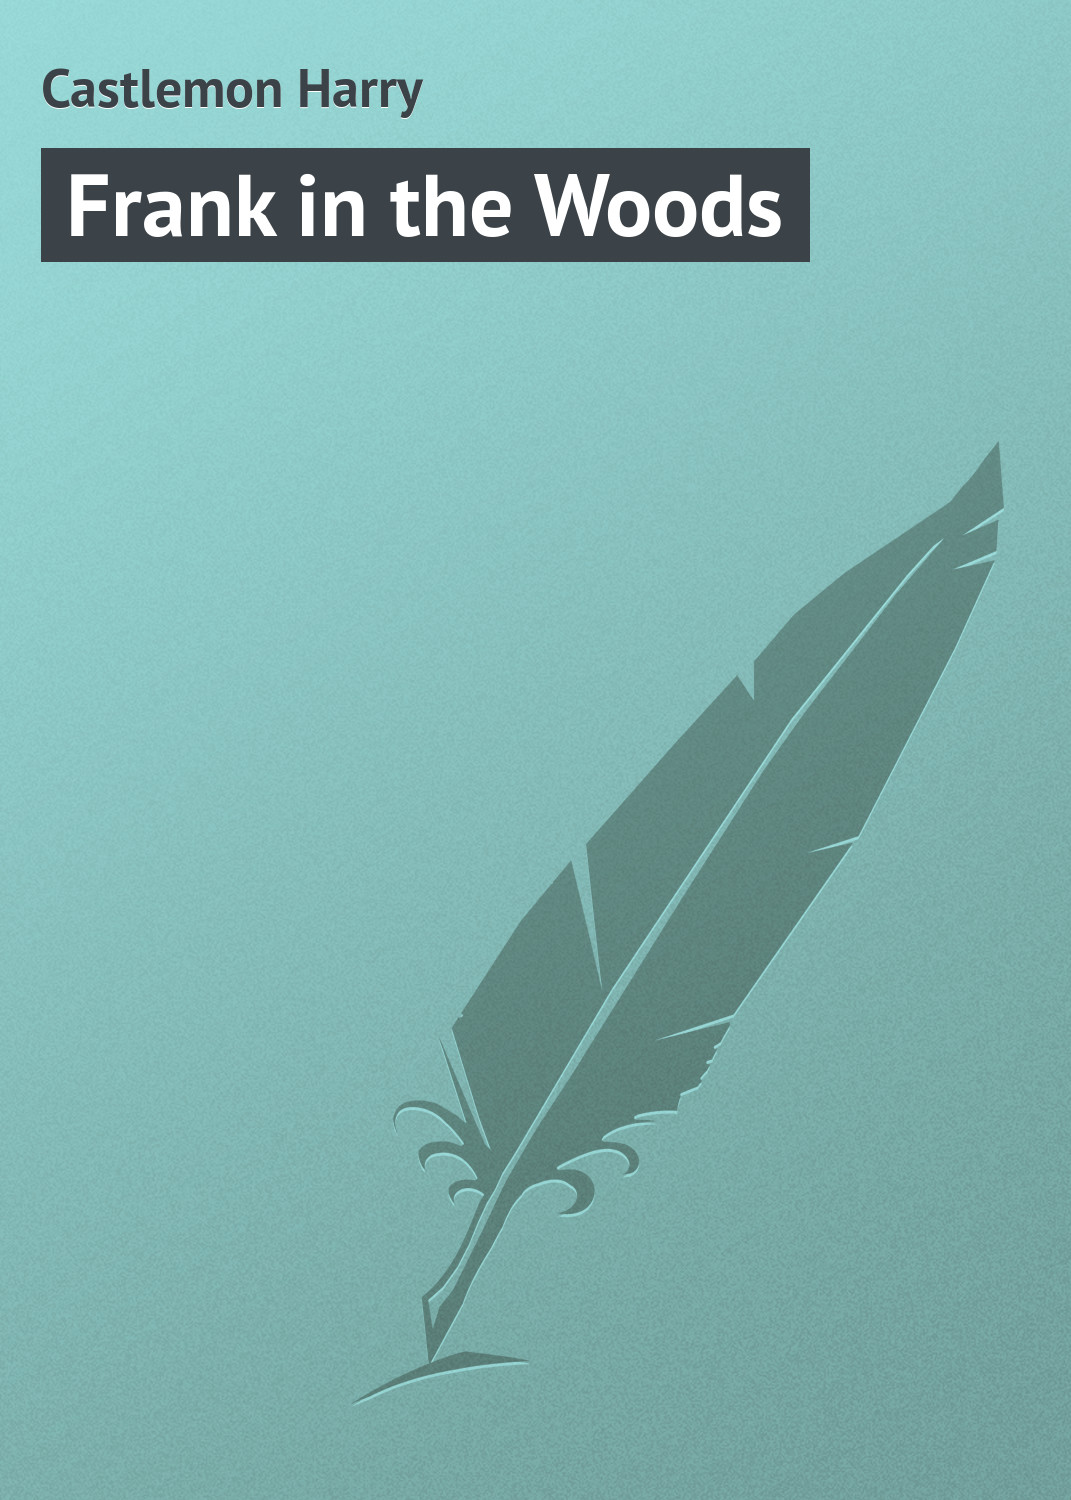 Книга Frank in the Woods из серии , созданная Harry Castlemon, может относится к жанру Зарубежная классика, Зарубежные детские книги. Стоимость электронной книги Frank in the Woods с идентификатором 23154963 составляет 5.99 руб.